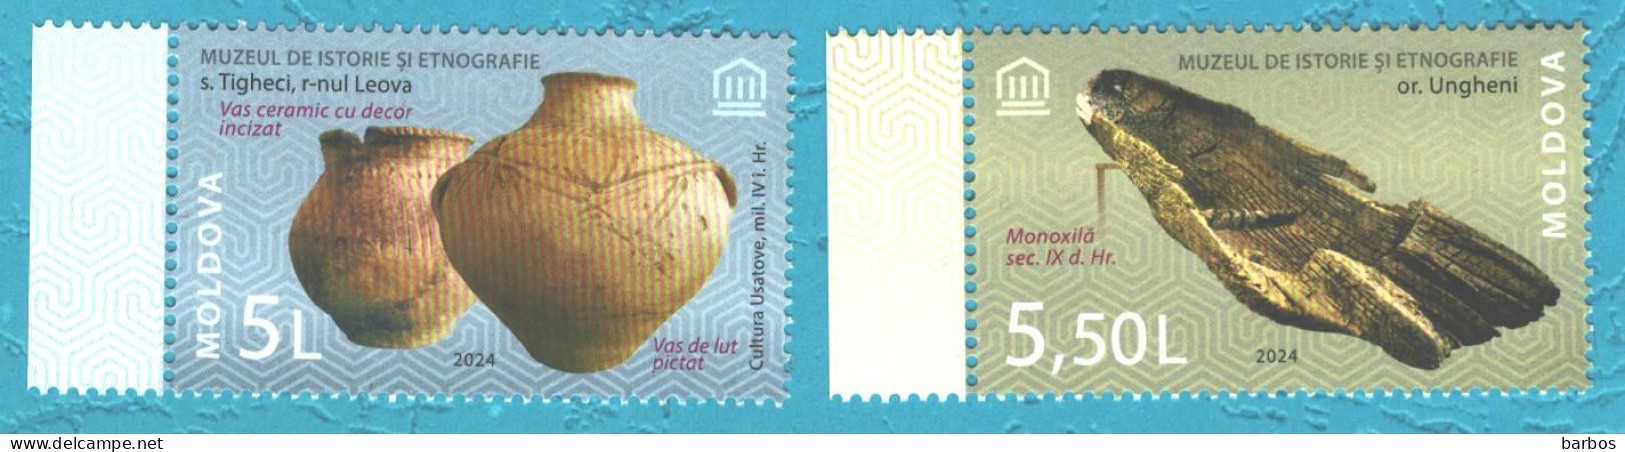 Moldova , 2024 , From The Museums’ Patrimony, 2 V., MNH - Moldavie